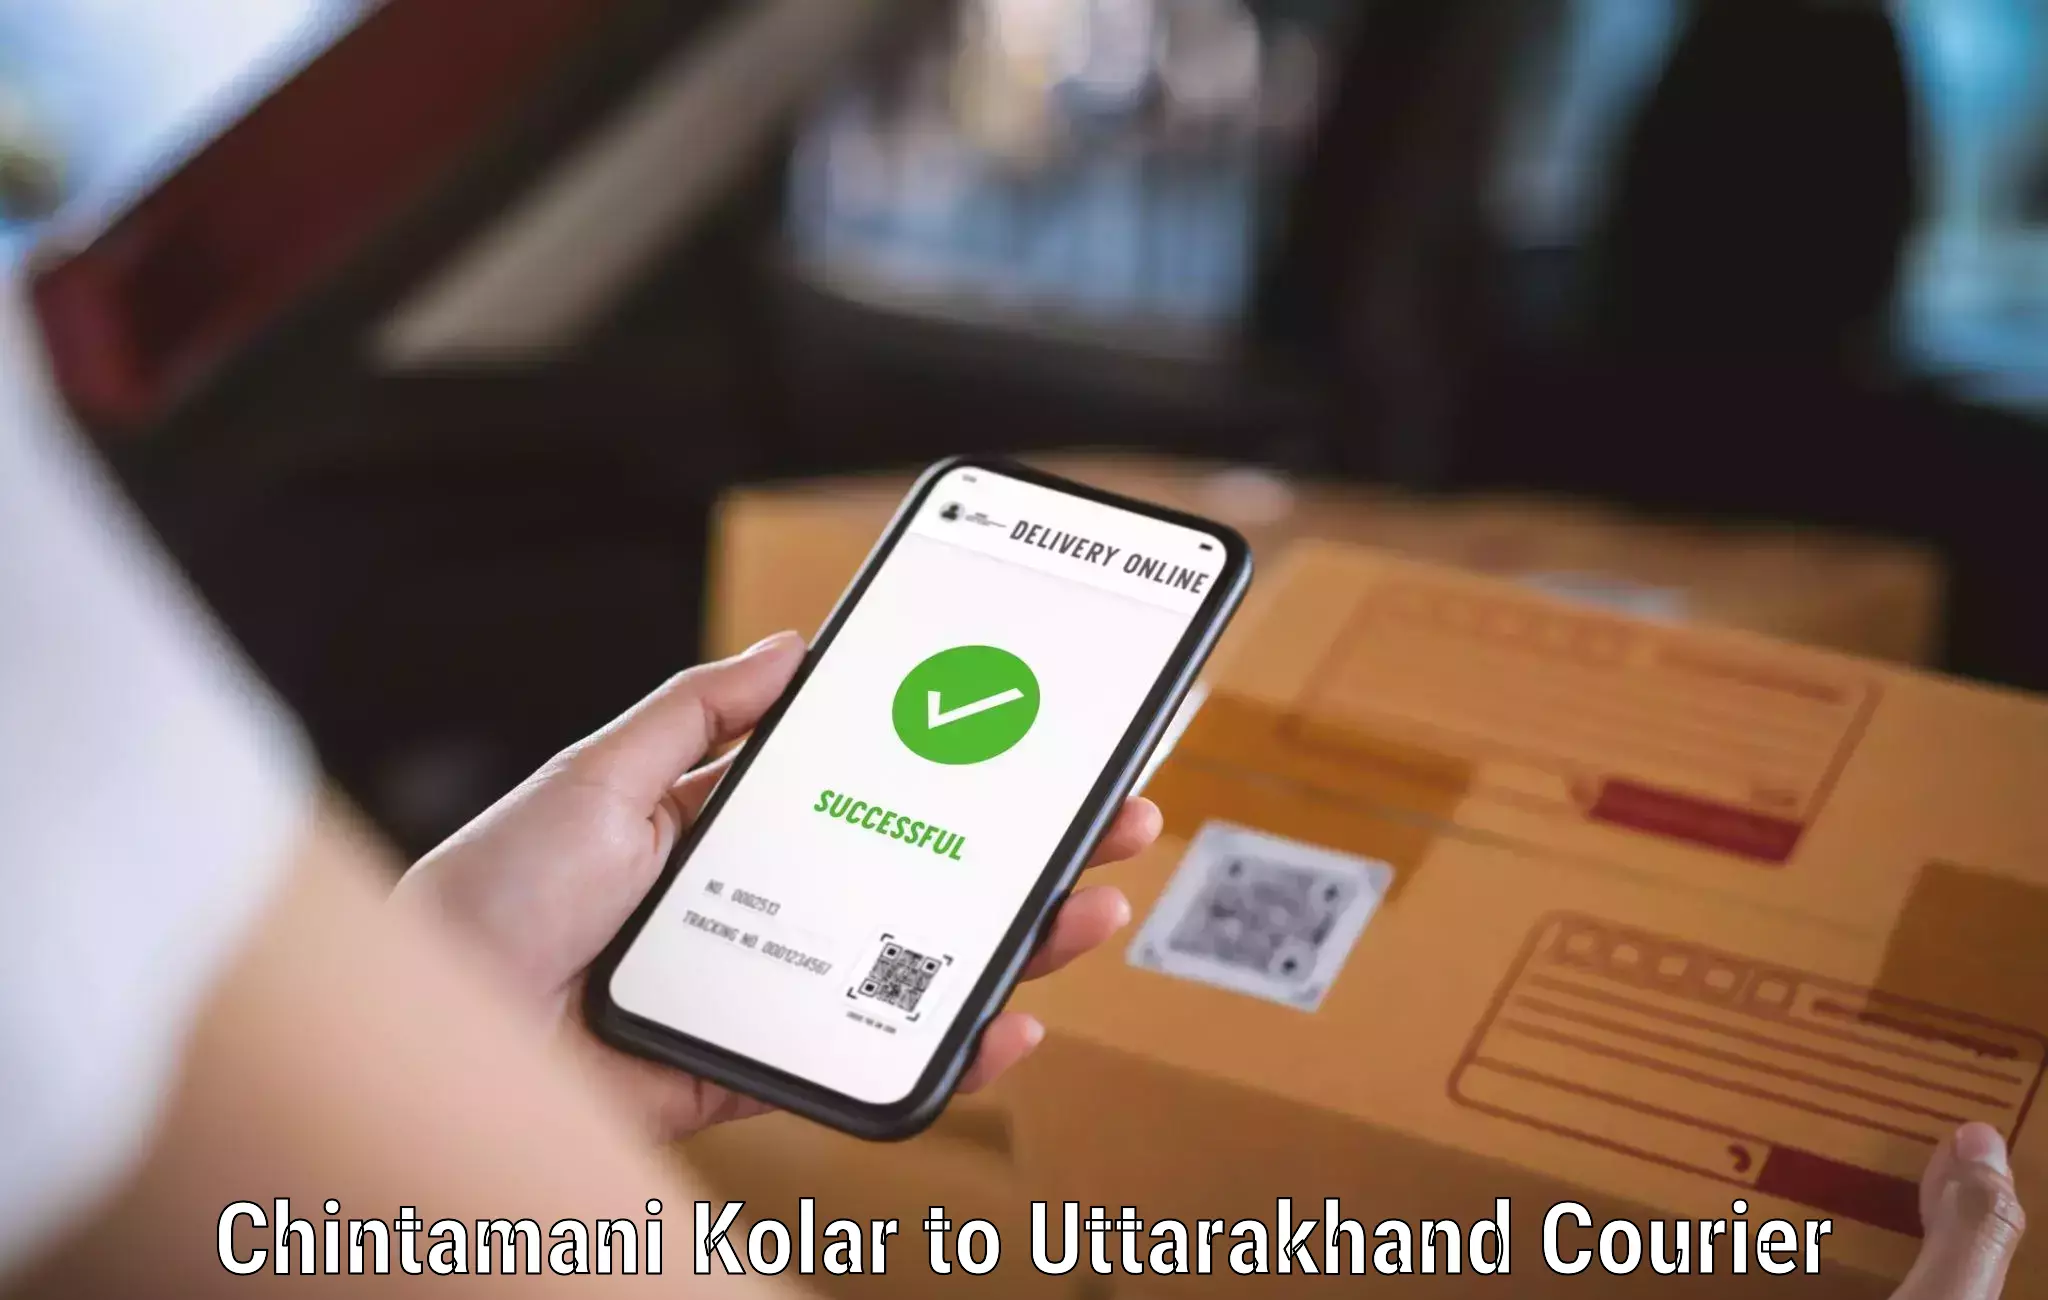 Advanced courier platforms Chintamani Kolar to Kashipur